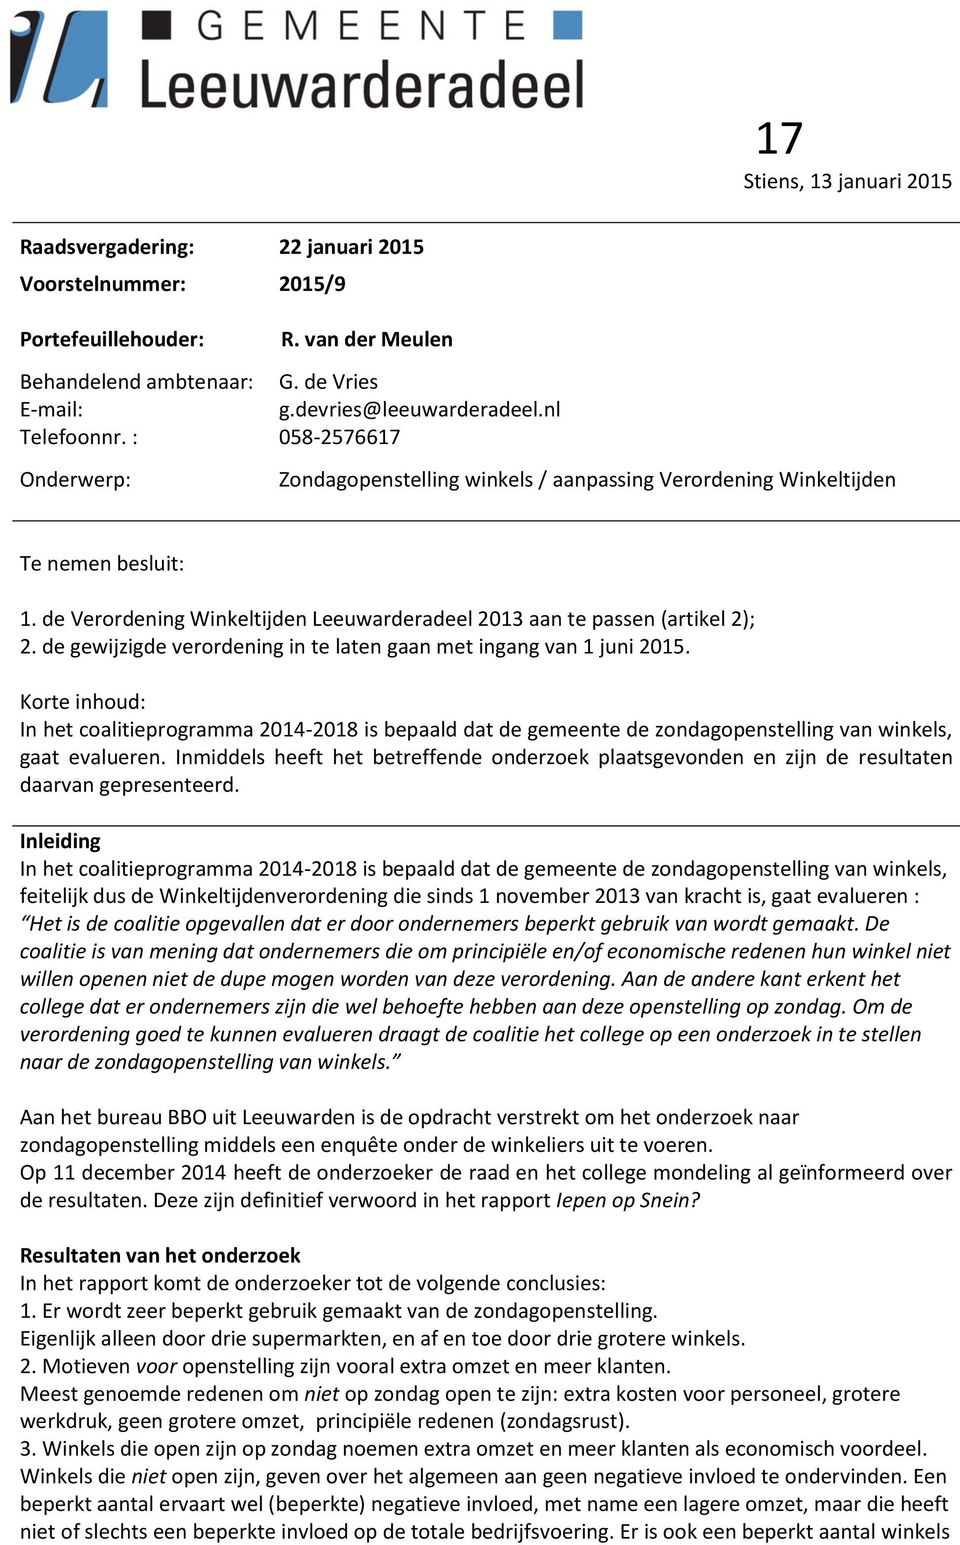 de Verordening Winkeltijden Leeuwarderadeel 2013 aan te passen (artikel 2); 2. de gewijzigde verordening in te laten gaan met ingang van 1 juni 2015.